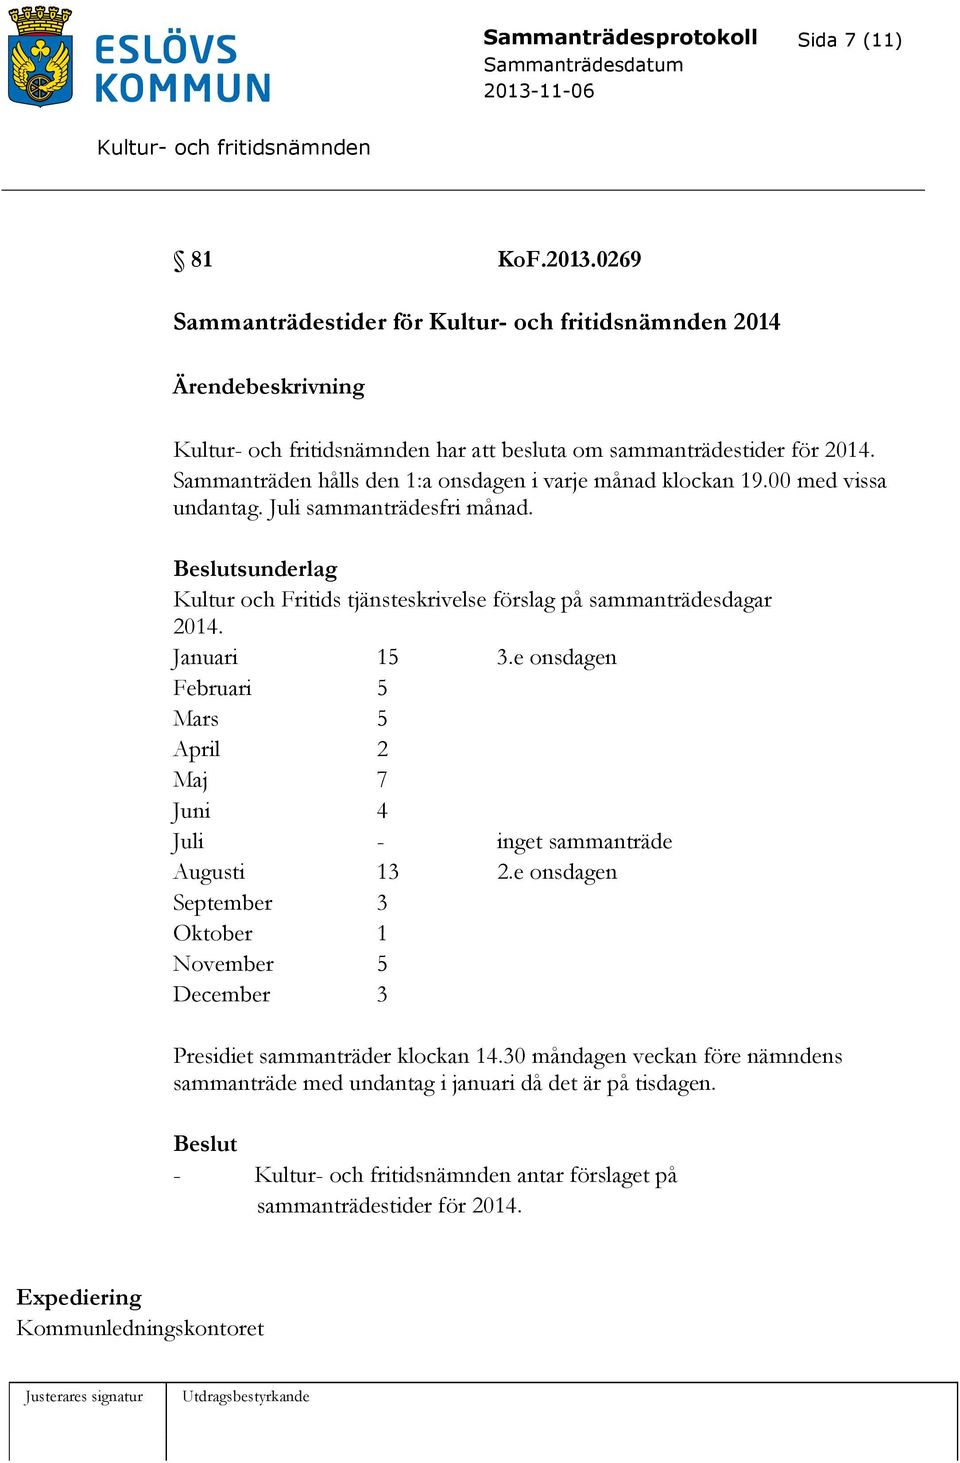 sunderlag Kultur och Fritids tjänsteskrivelse förslag på sammanträdesdagar 2014. Januari 15 3.